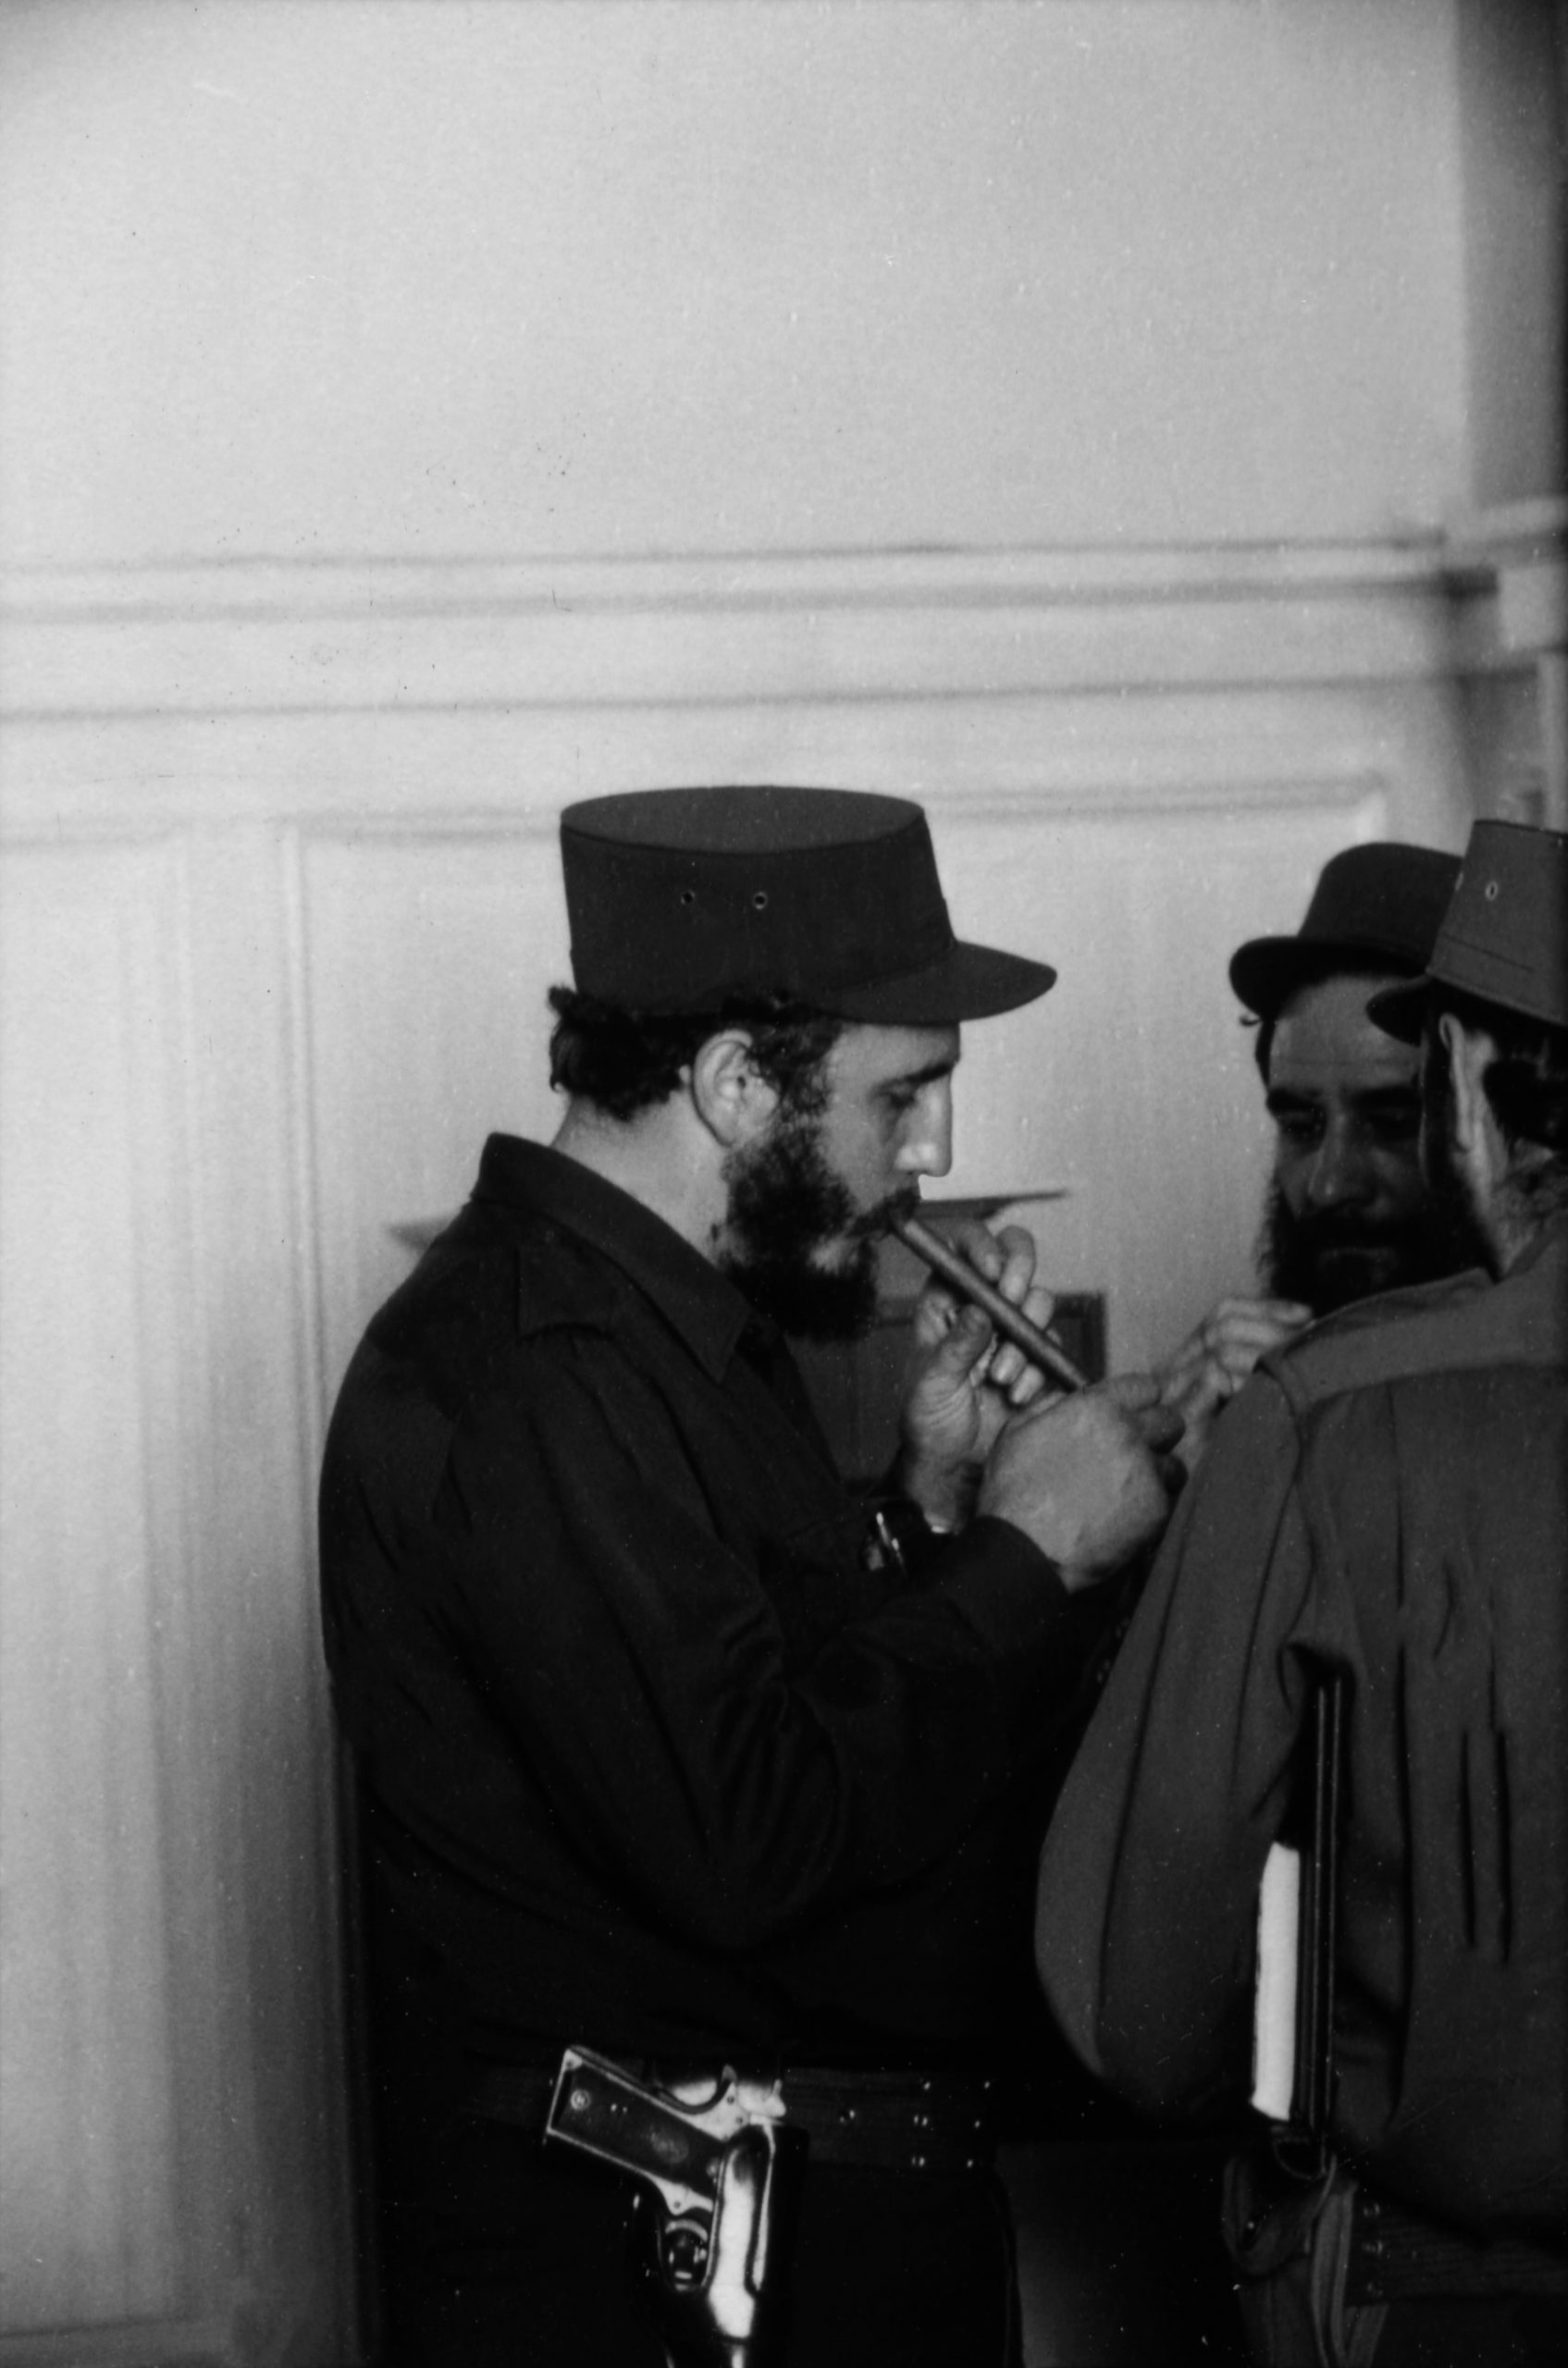     Jerry Schatzberg, Fidel Castro, 1959

